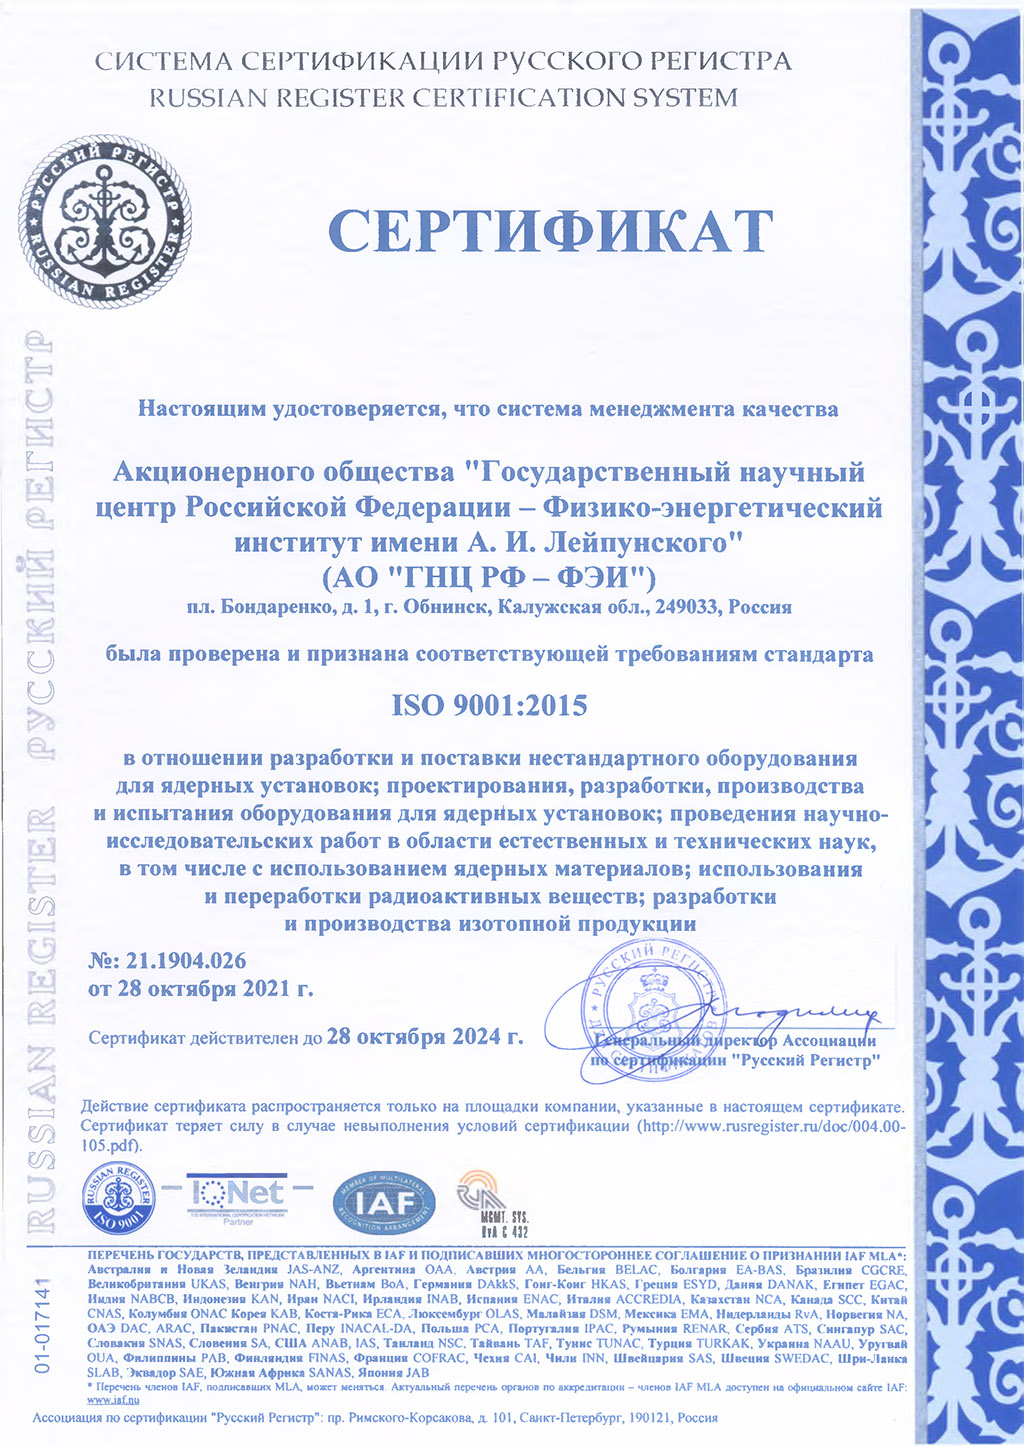 Международный Сертификат соответствия требованиям ISO 9001:2015 (на русском языке). Срок действия до 28.10.202